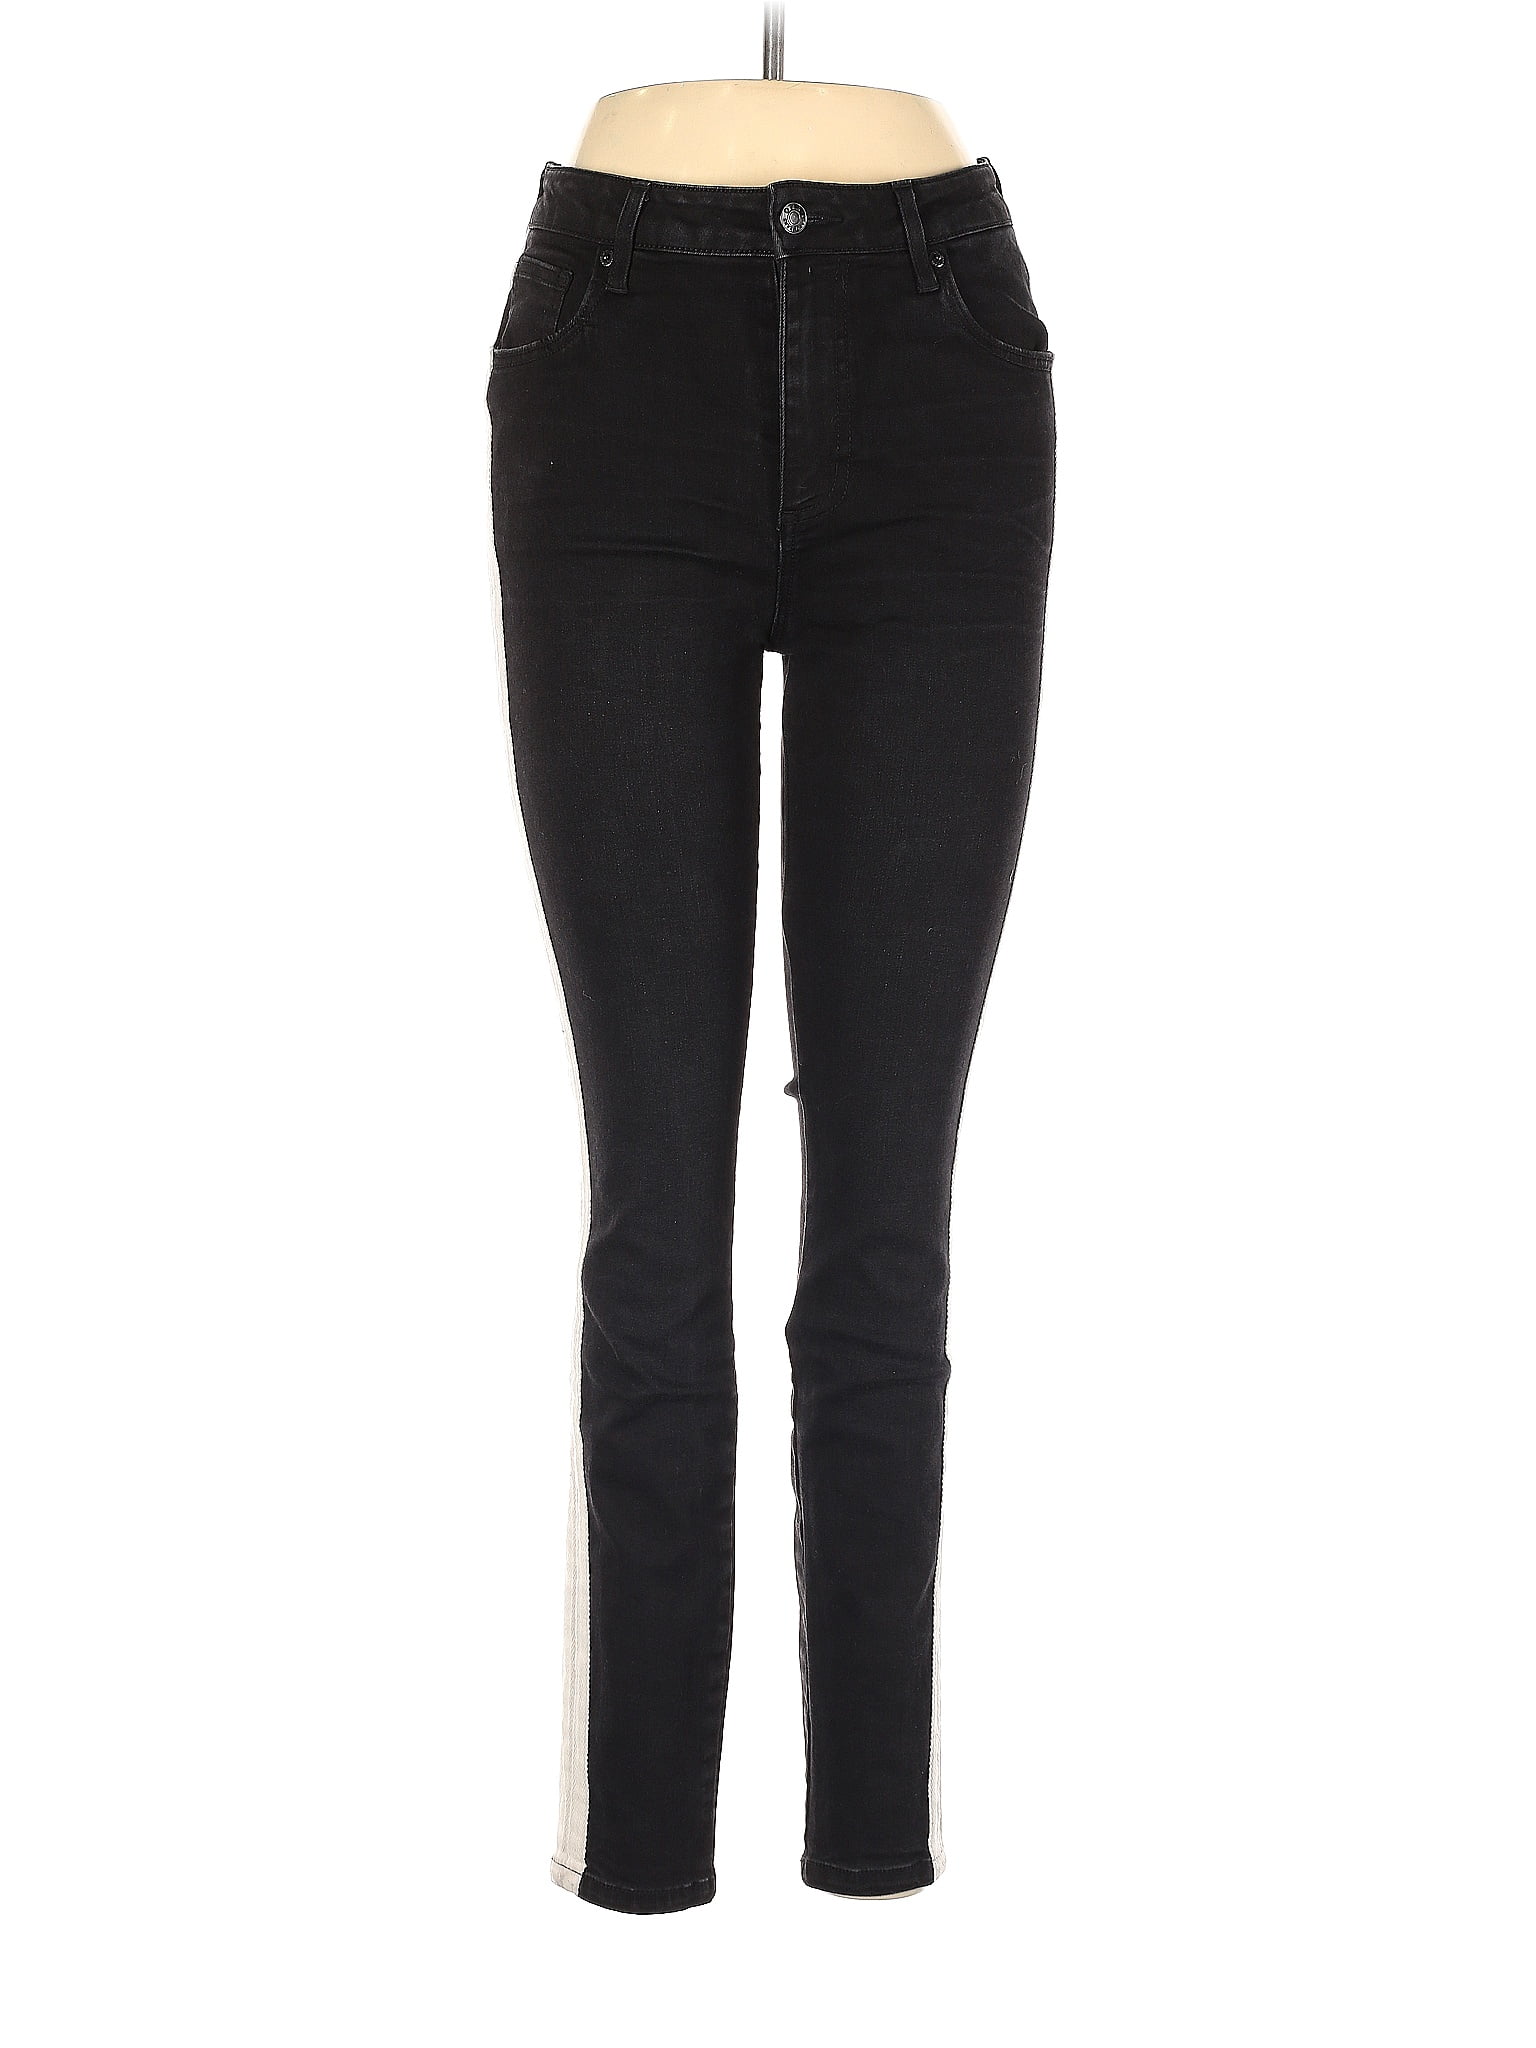 DTLA Brand Jeans Solid Black Jeggings 28 Waist - 83% off